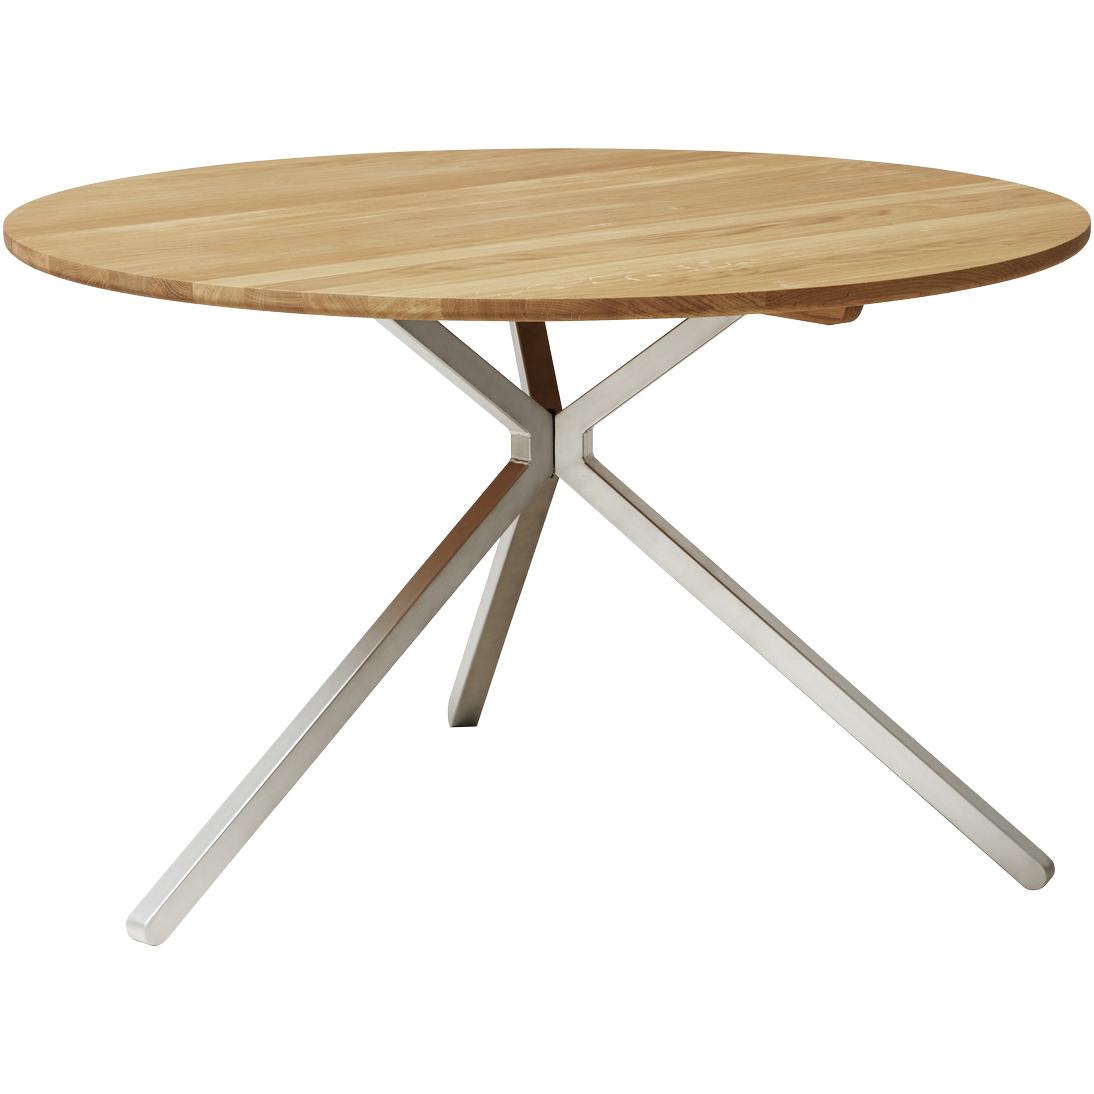 Form & Refine Table de Frisbee Ø120 cm. Chêne